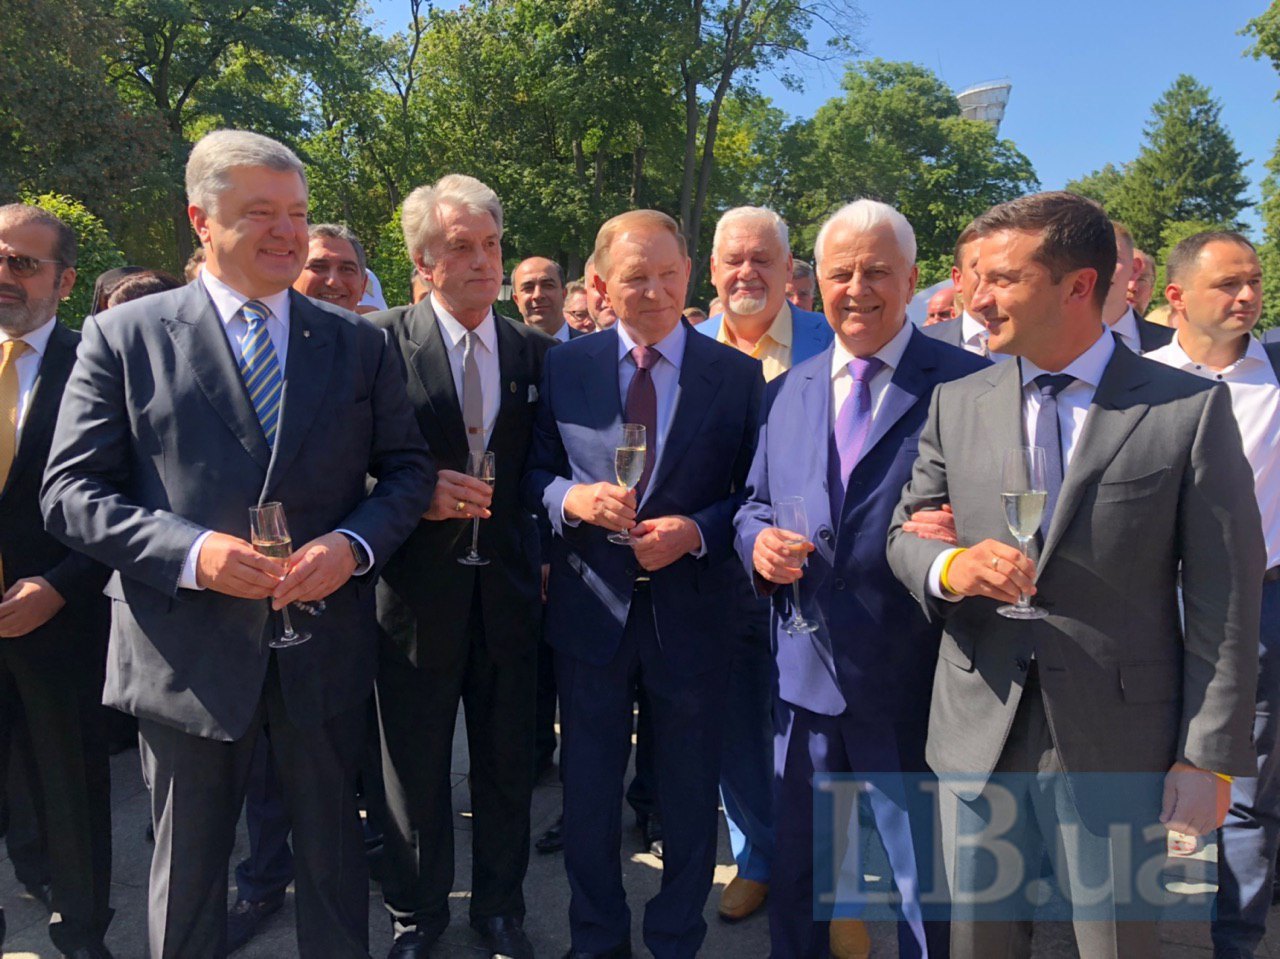 Вперше на на одному фото п'ятеро президентів України під час святкування Дня незалежності у 2019 році